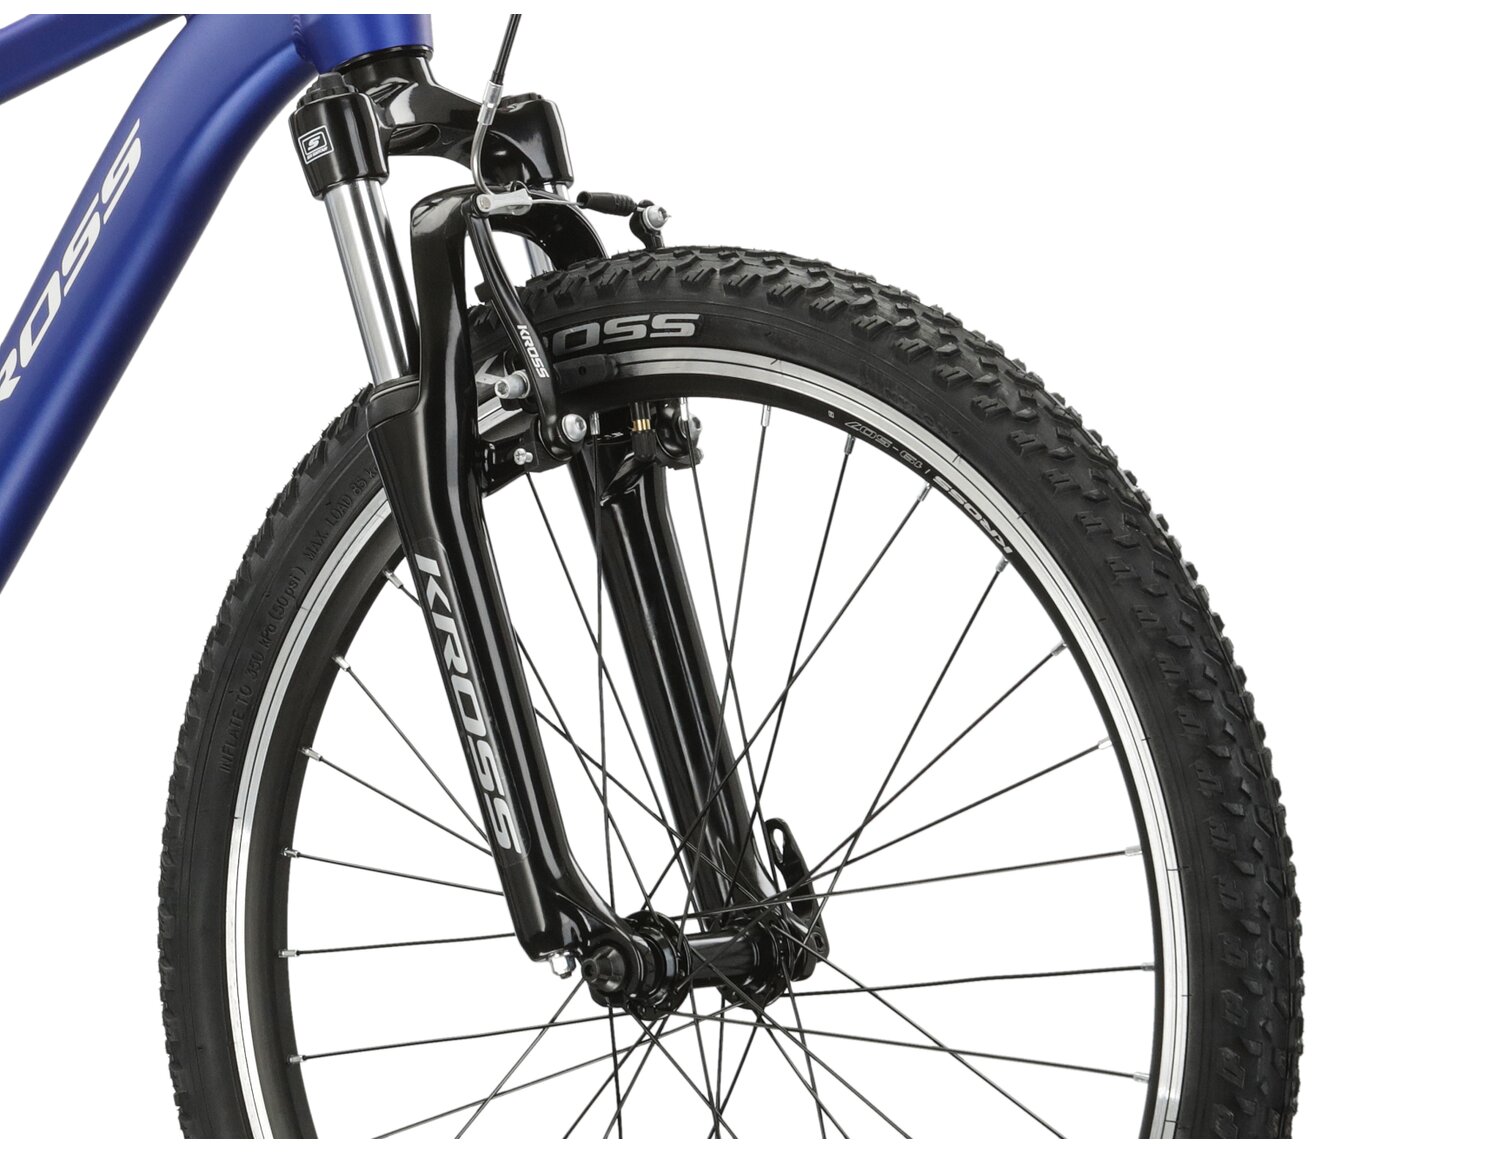  Aluminowa rama, amortyzowany widelec Suntour o skoku 50 mm oraz opony o szerokości 1,95 cala w rowerze juniorskim KROSS Junior 2.0 